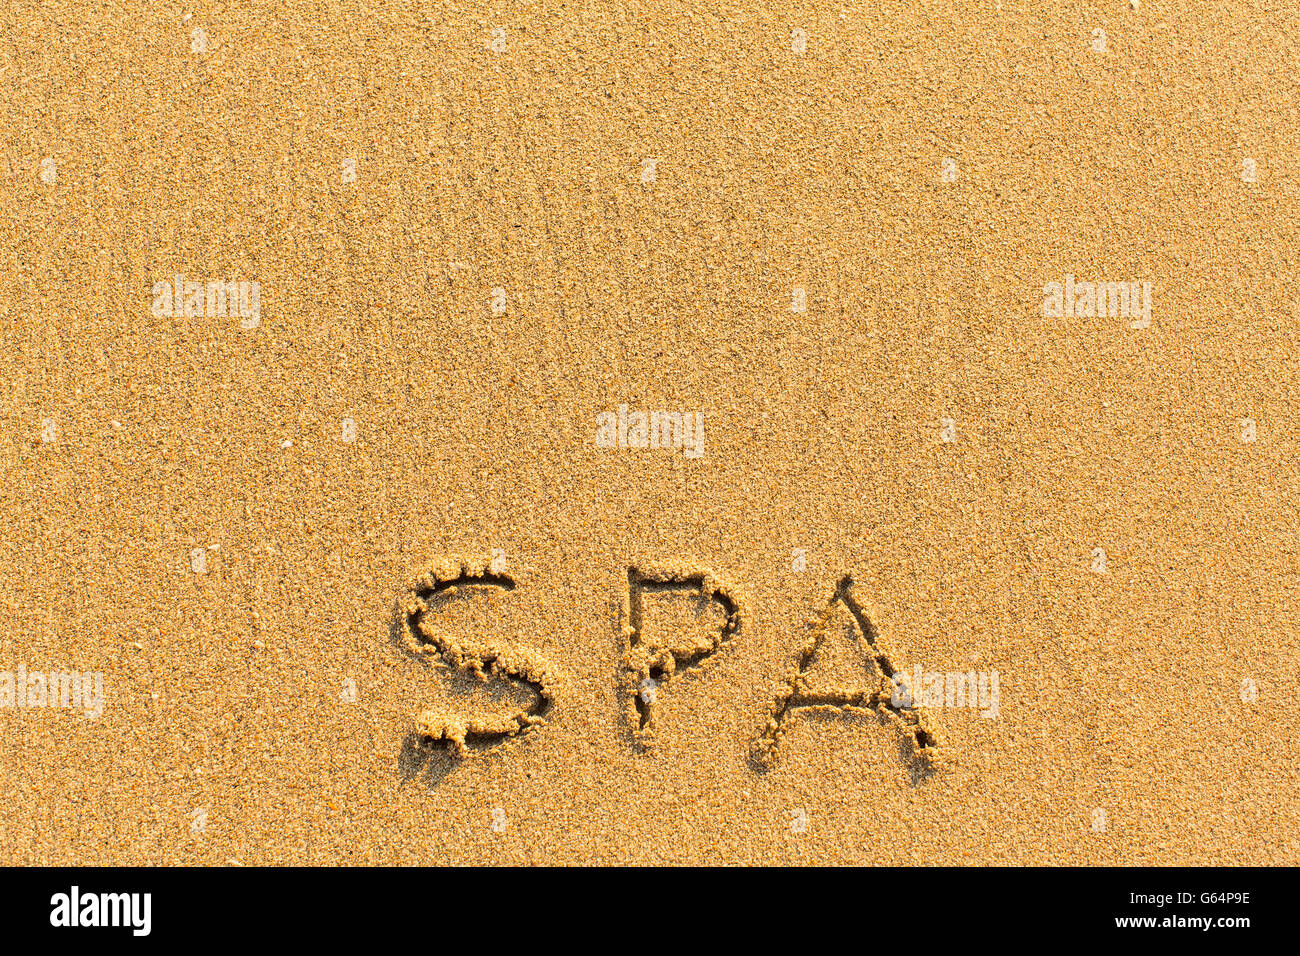 Spa - Wort gezeichnet am Sandstrand. Stockfoto